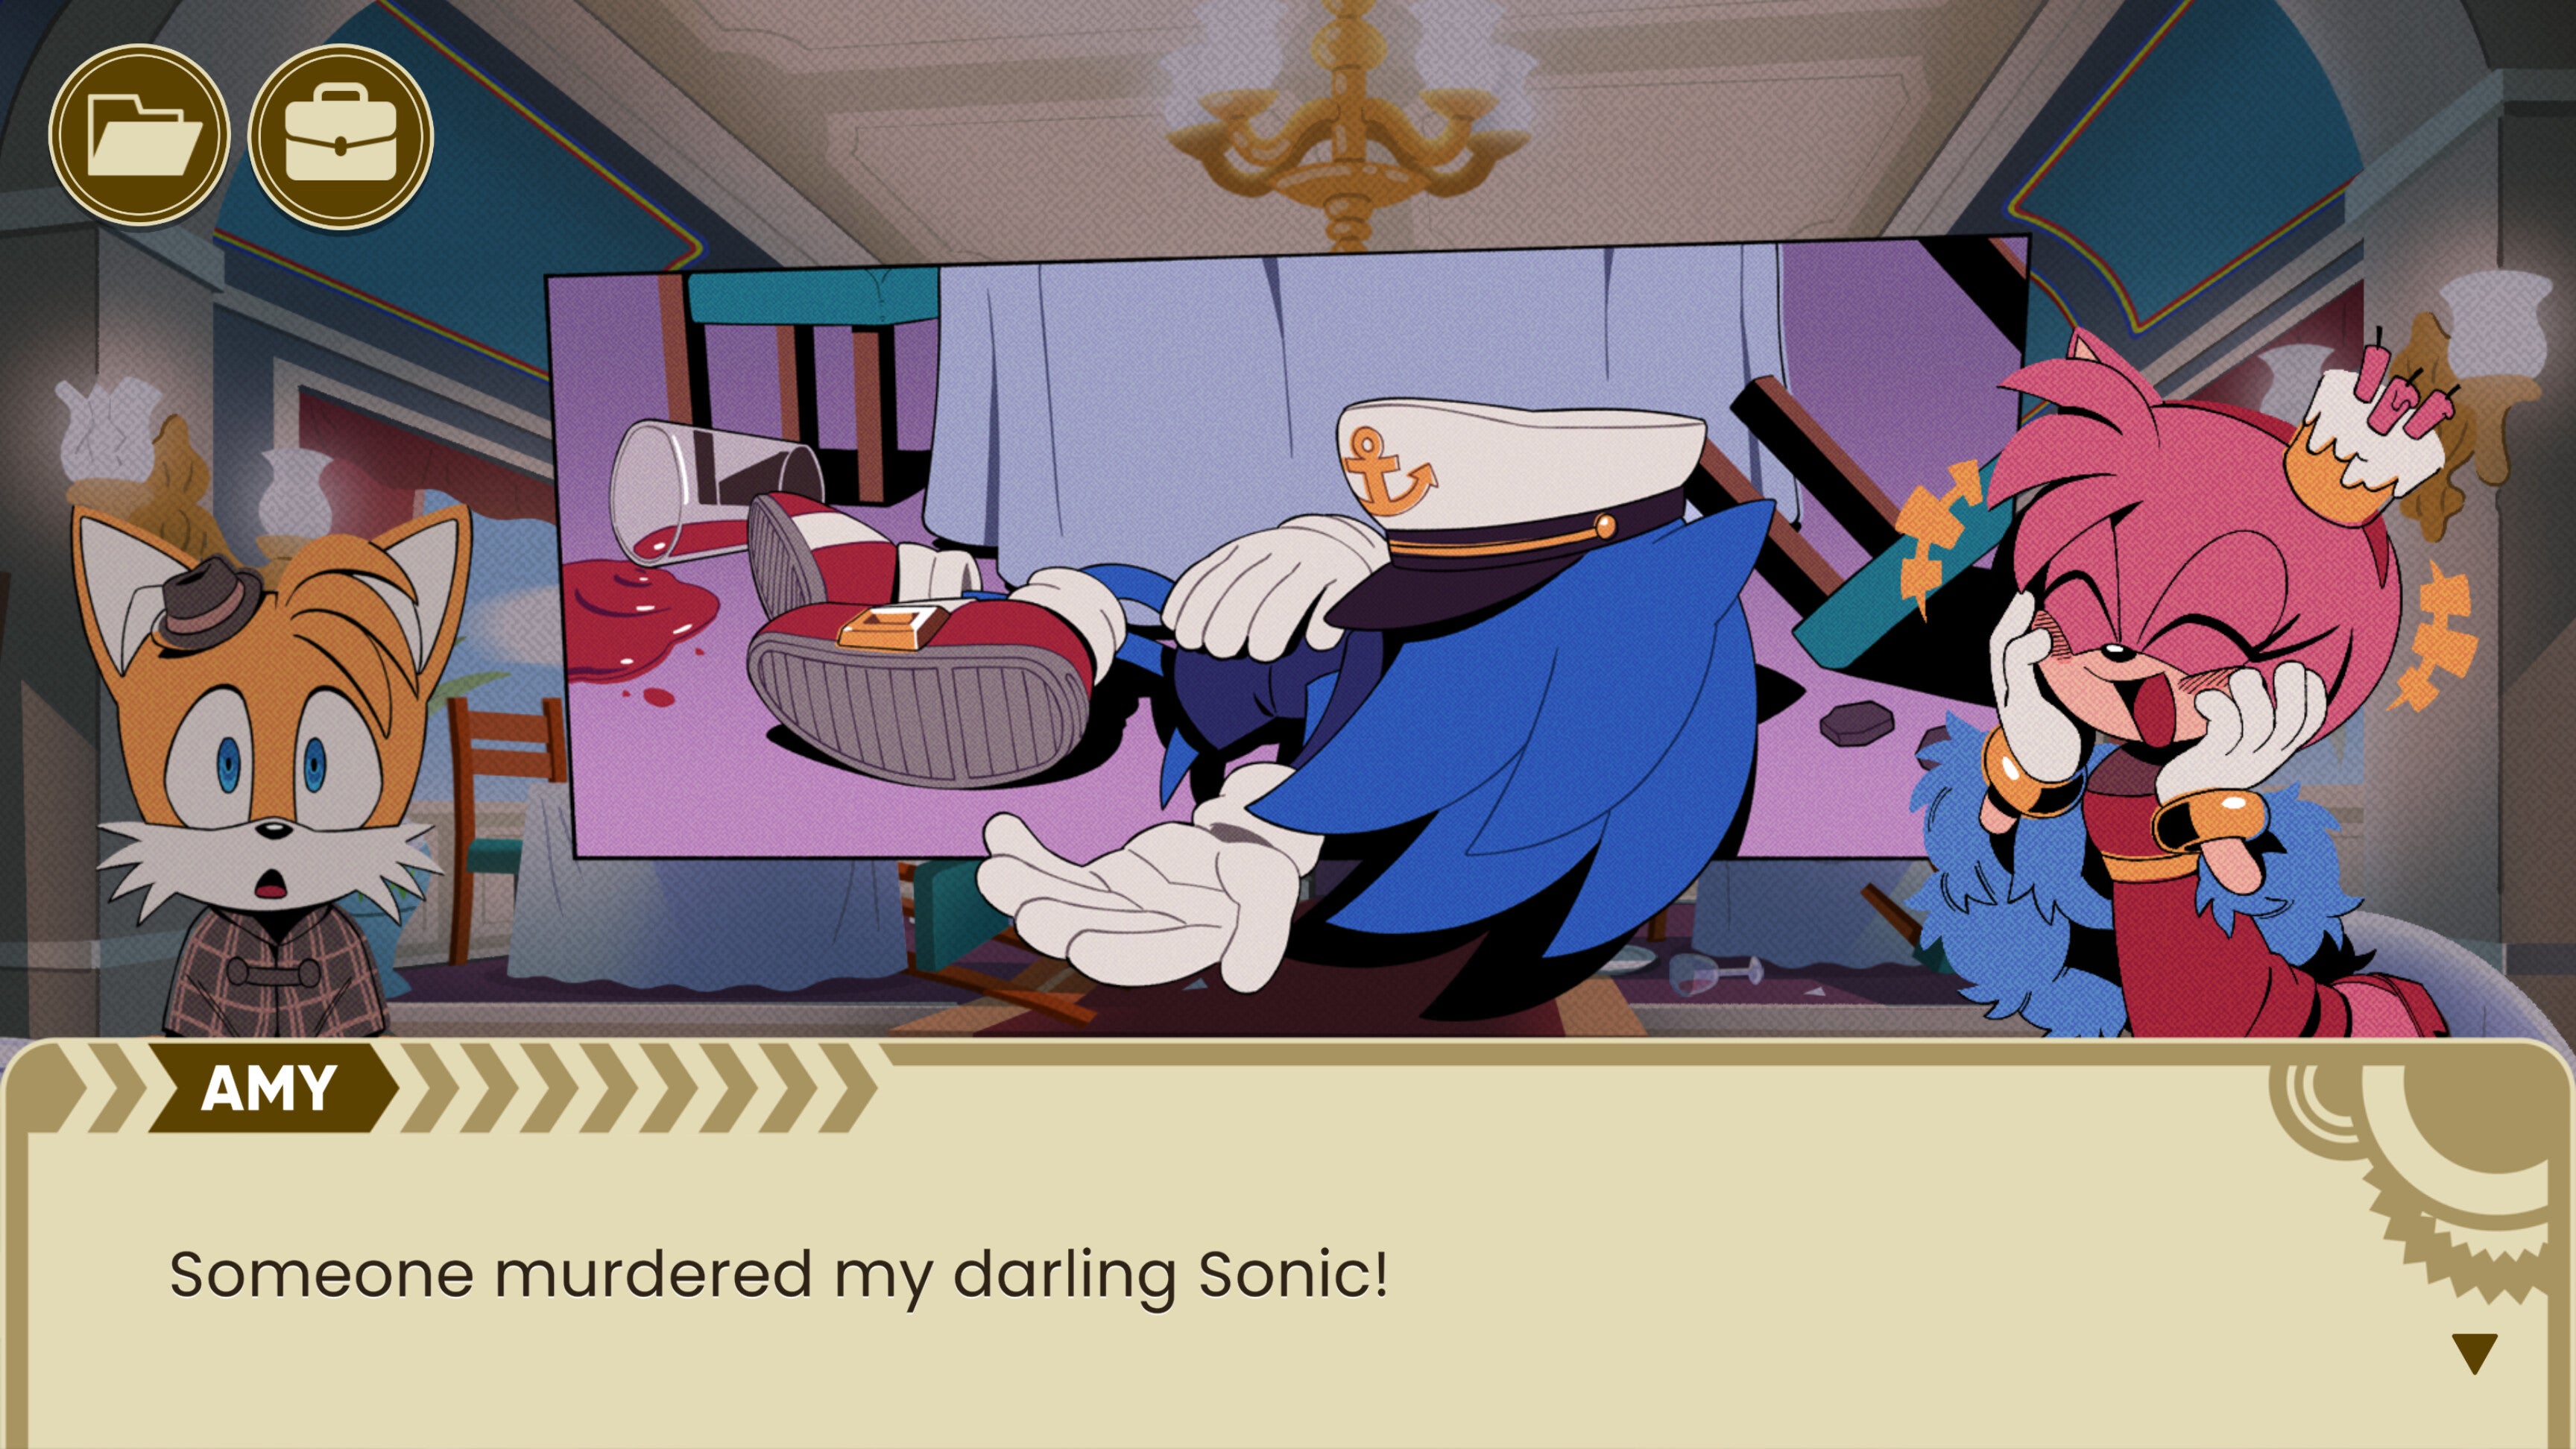 Sonic The Hedgehog foi assassinado e você pode resolver o mistério